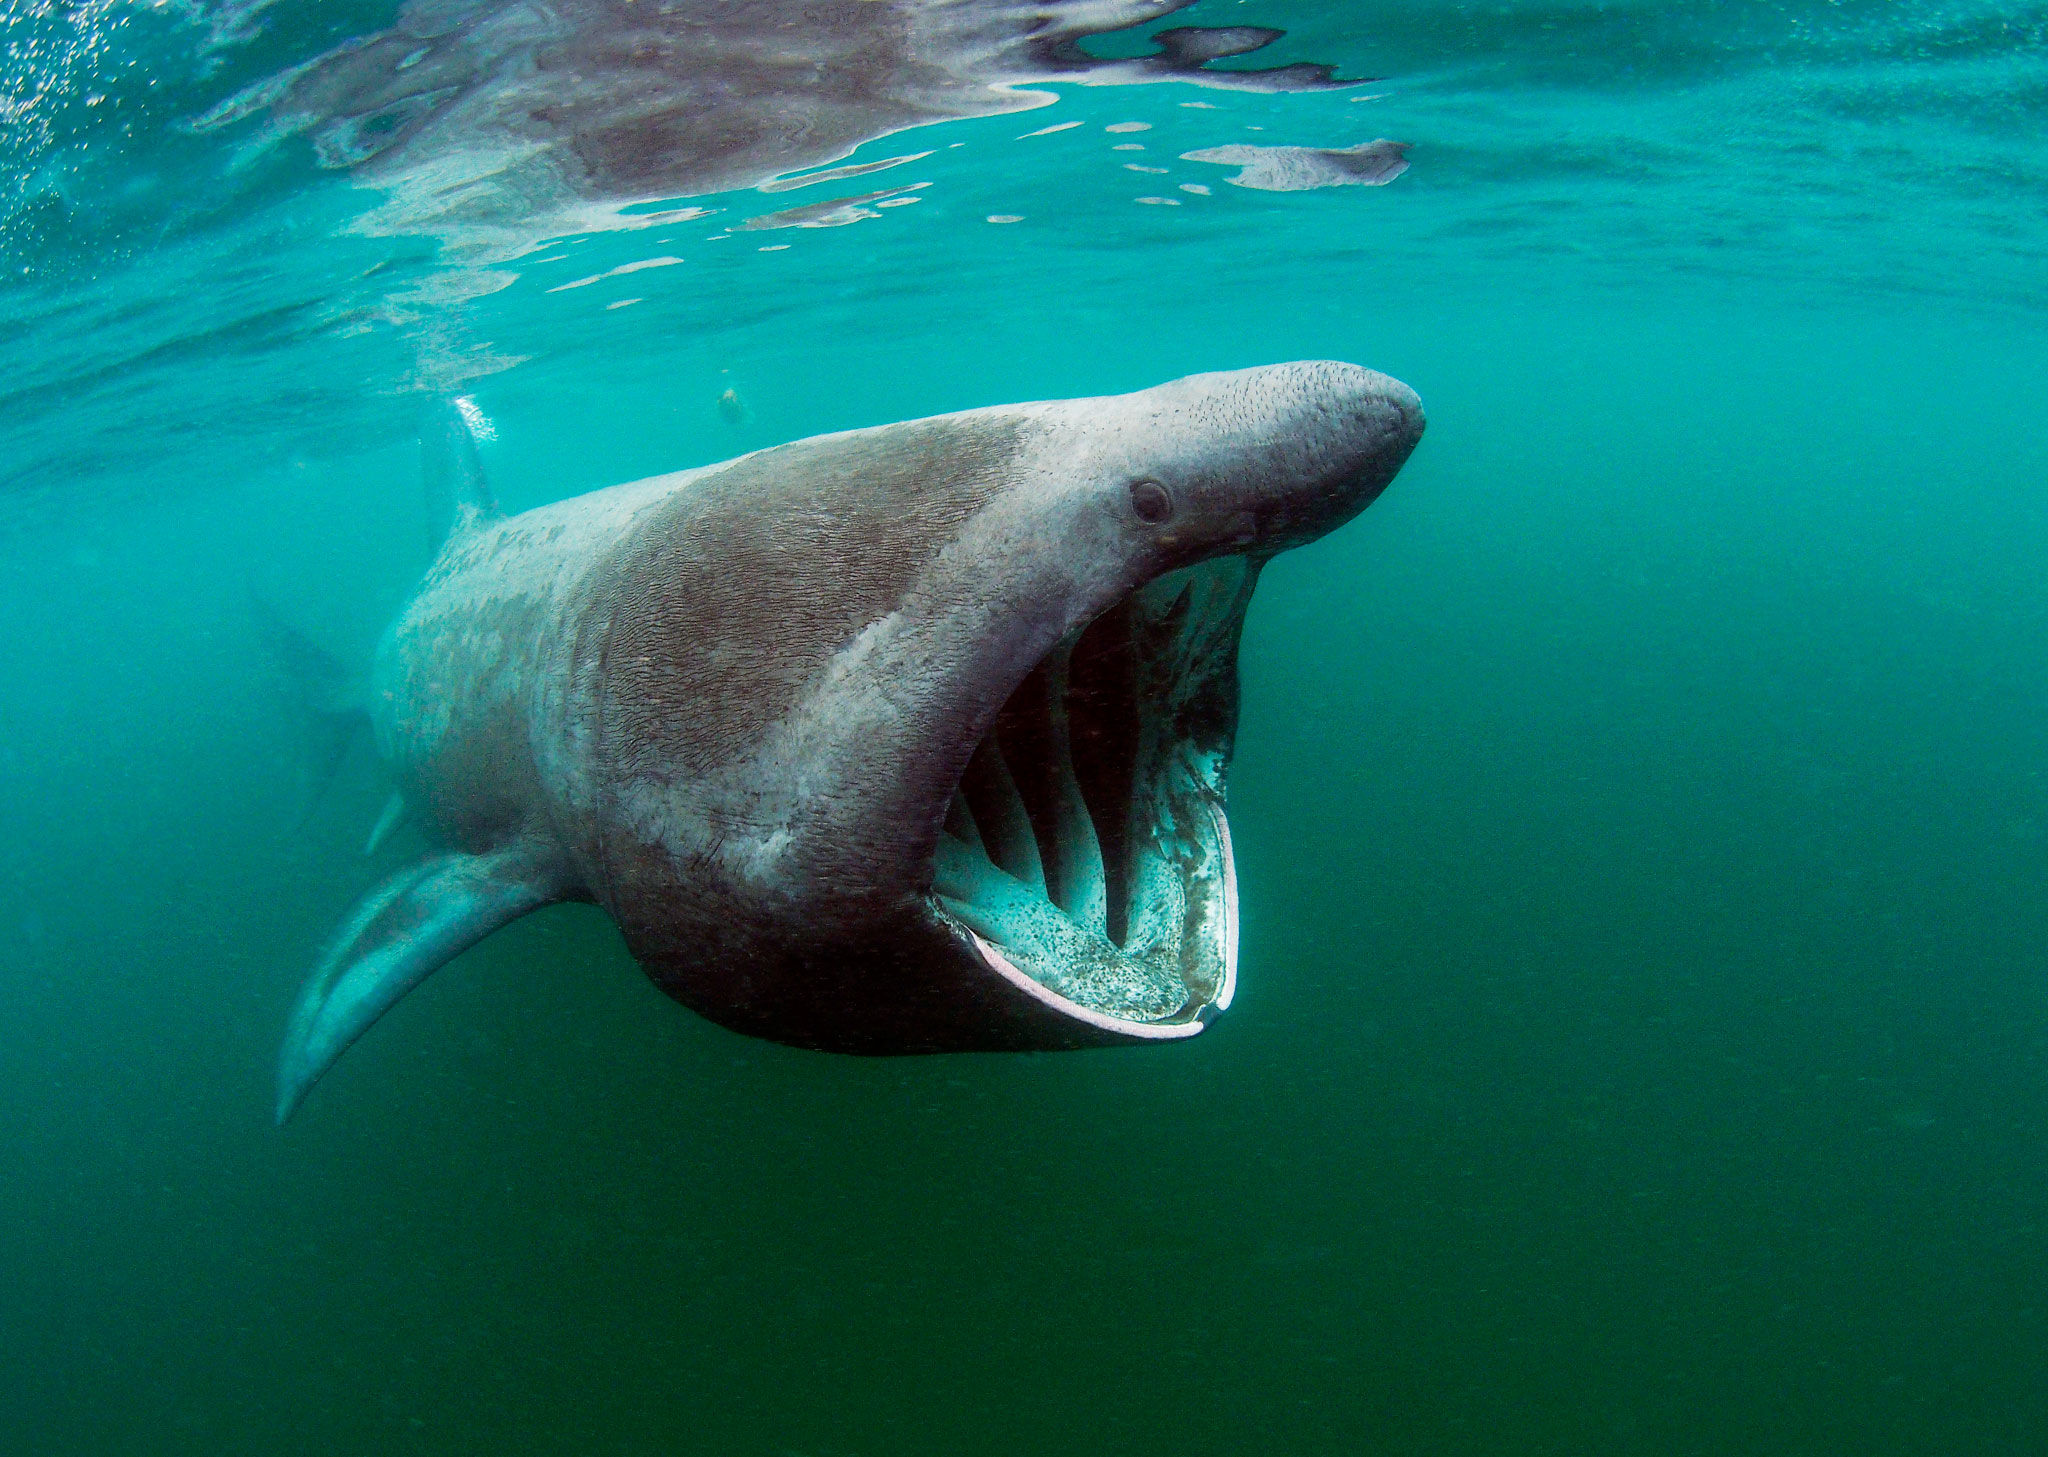 Громадный рот. Австралийская длиннорылая акула. Баскинг Шарк. Пелагическая большеротая акула. Баскинг Шарк акула.